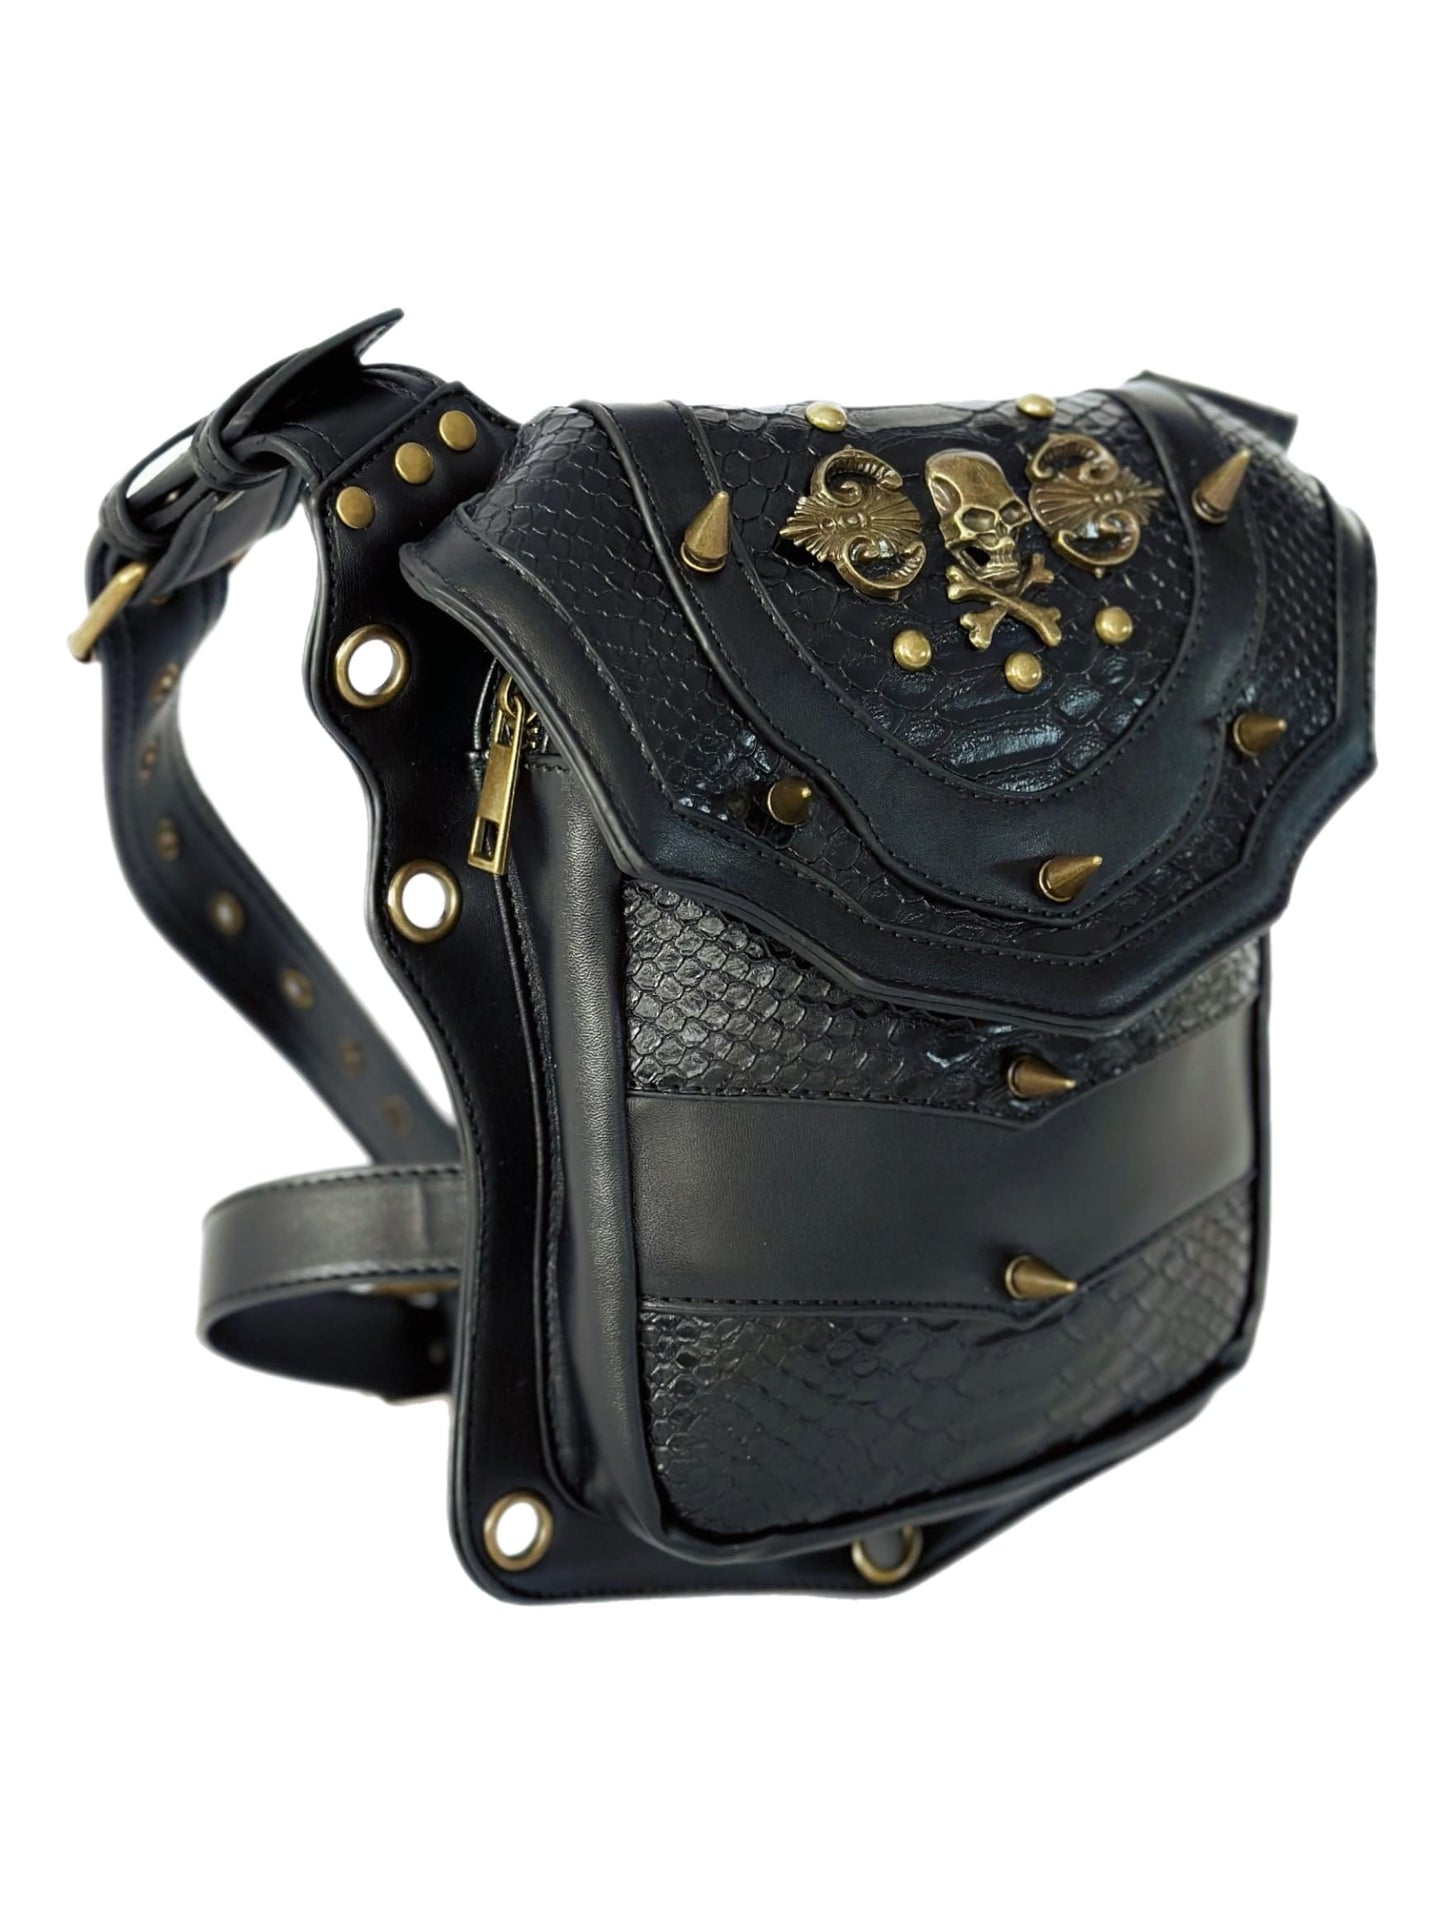 Vielseitige alternative Tasche: Gothic-, Biker & Punk Stil, wandelbar für Hüfte oder Schulter HG 139